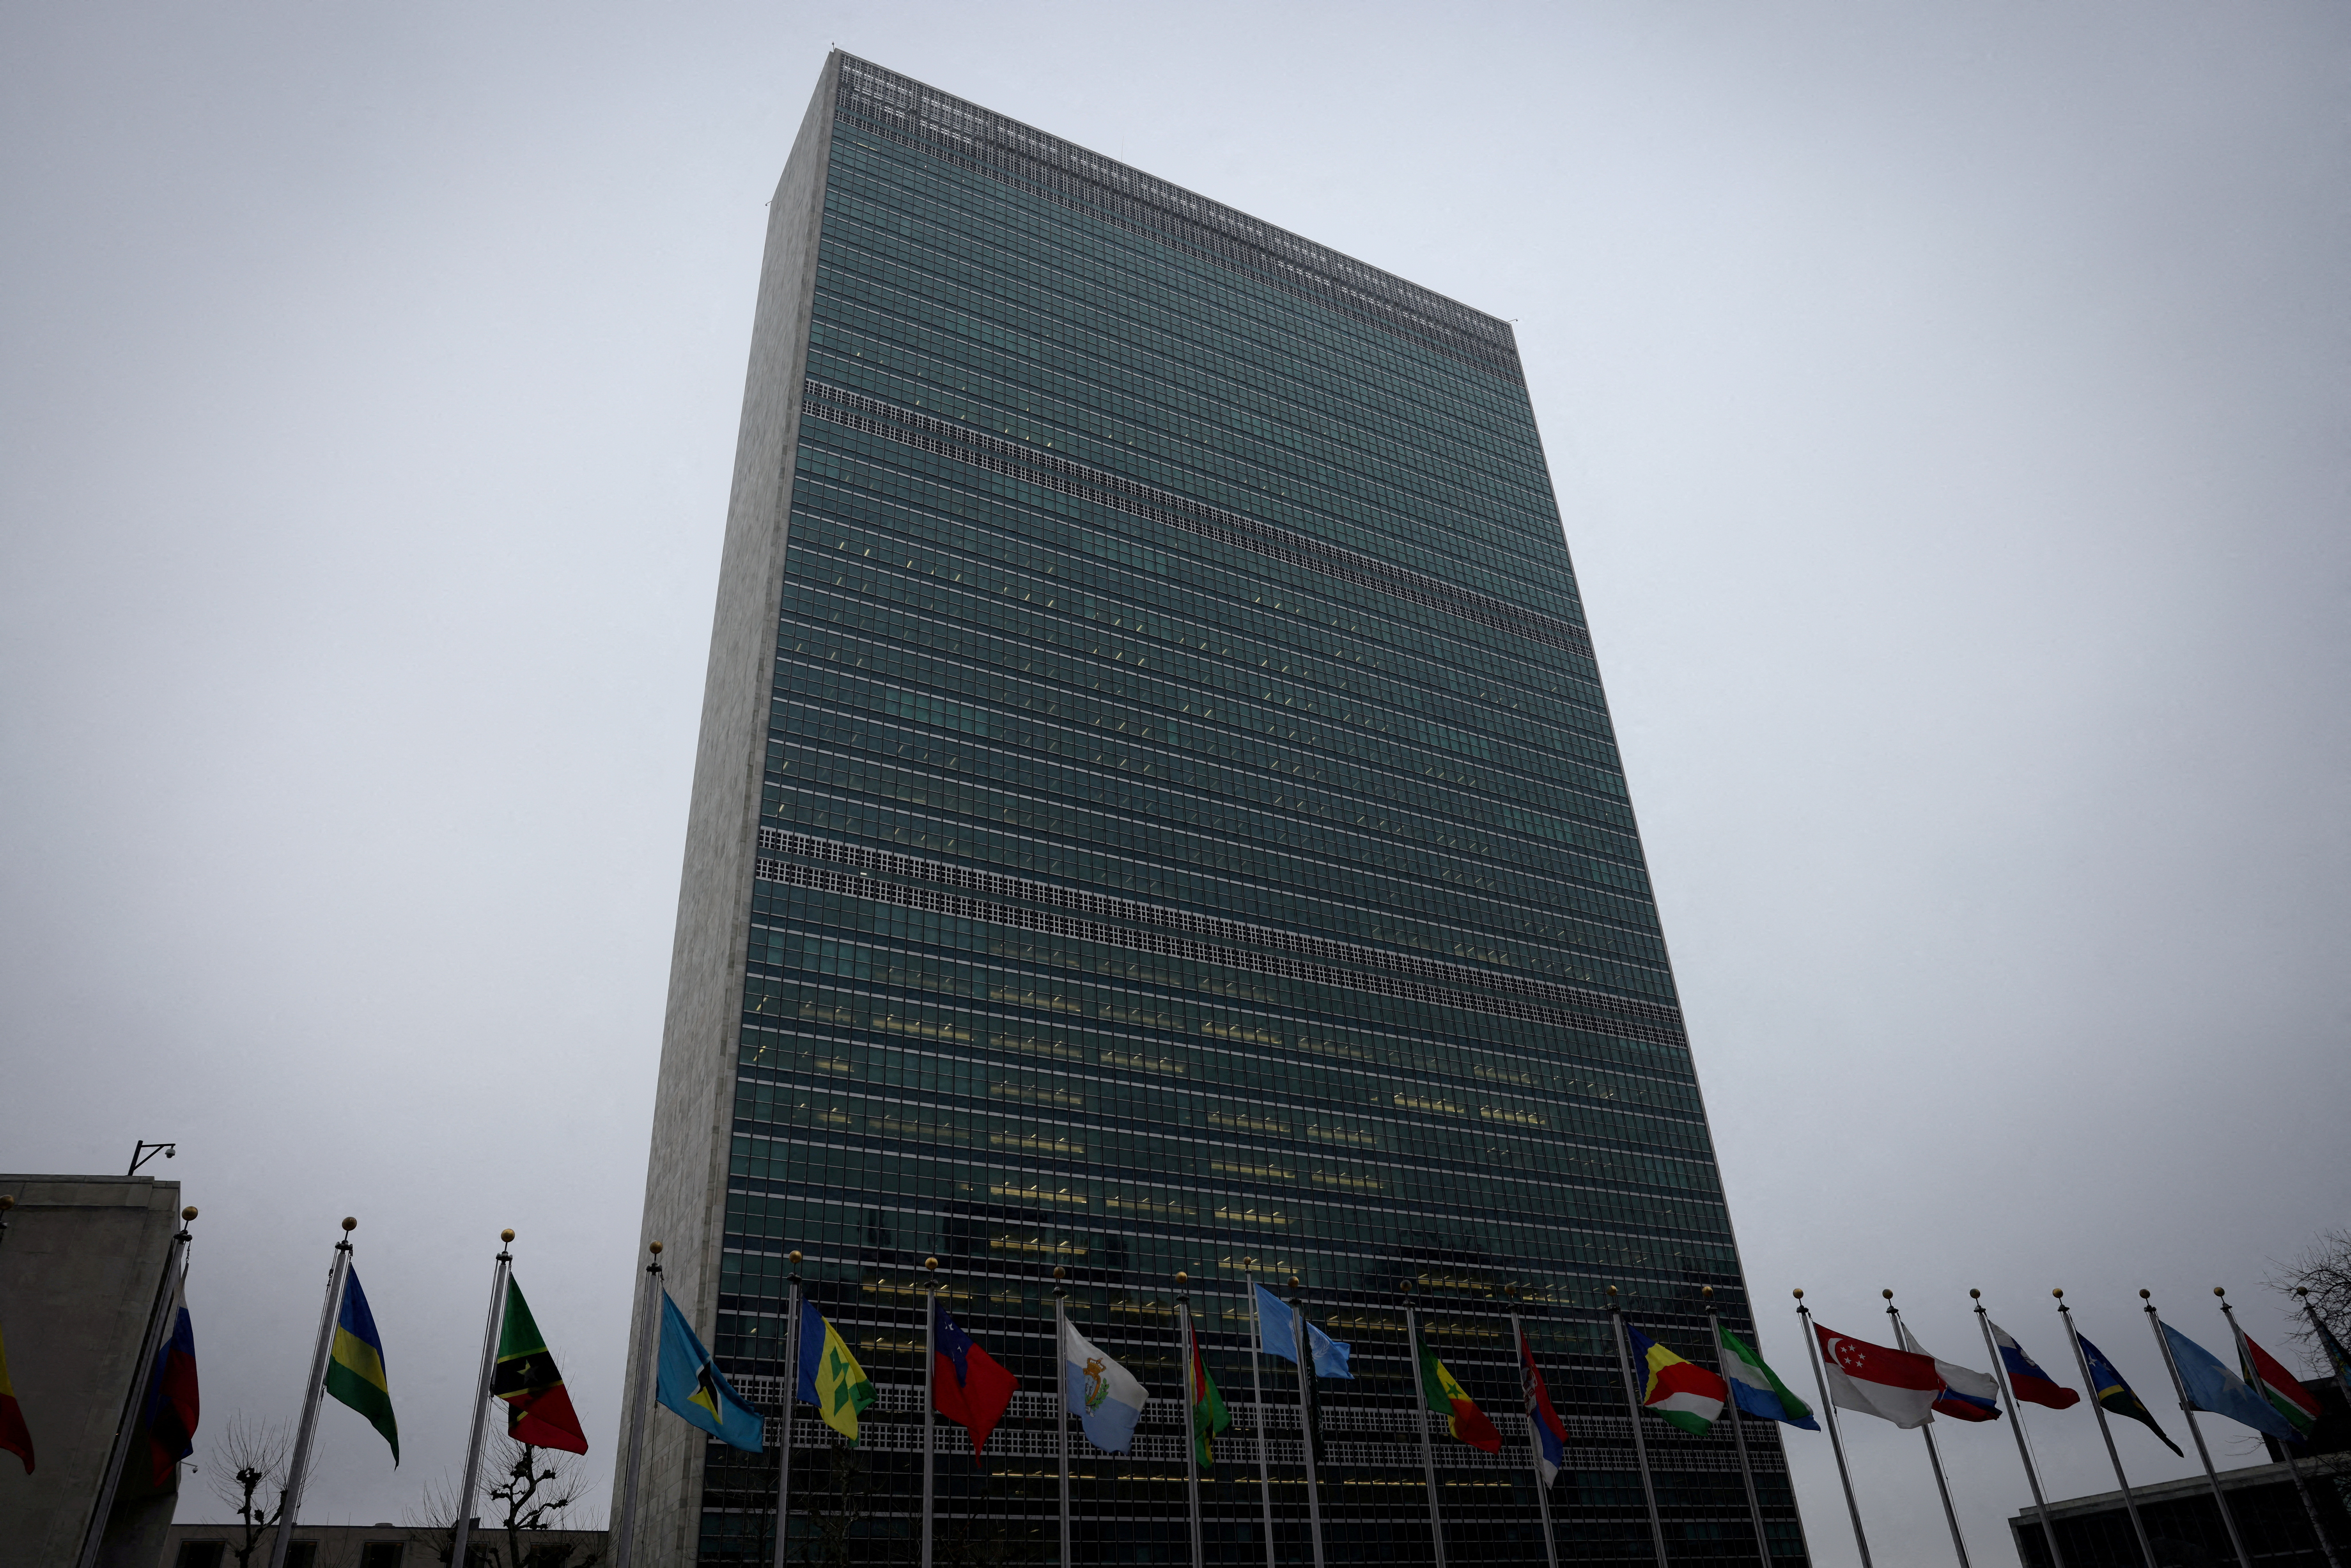 パレスチナ国連加盟決議案、総会で10日採決の可能性